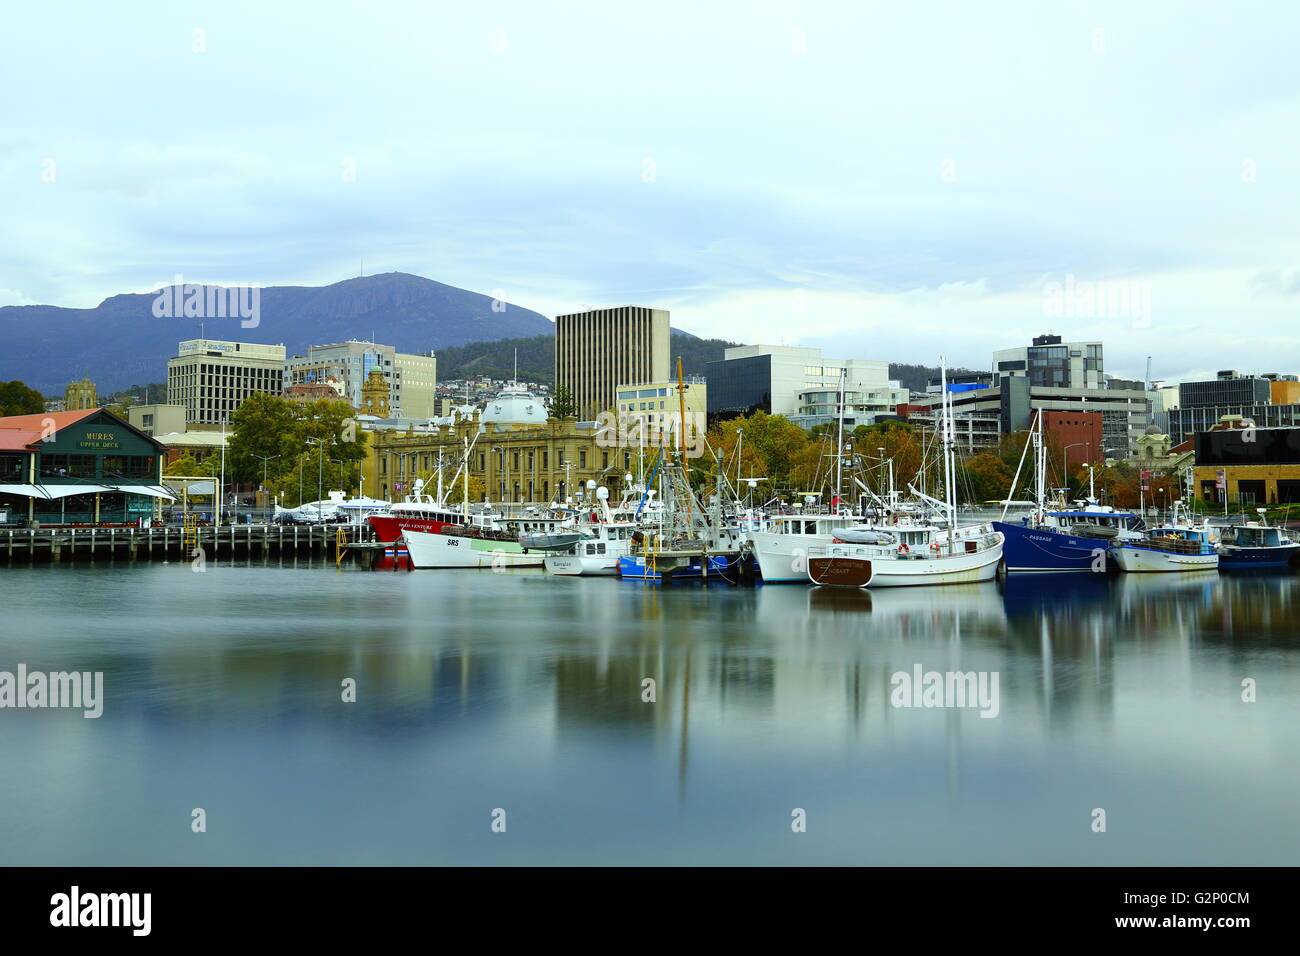 Bateaux de pêche au repos à Constitution Dock, avec Mount Wellington dans l'arrière-plan - Hobart, Tasmanie, Australie. Banque D'Images